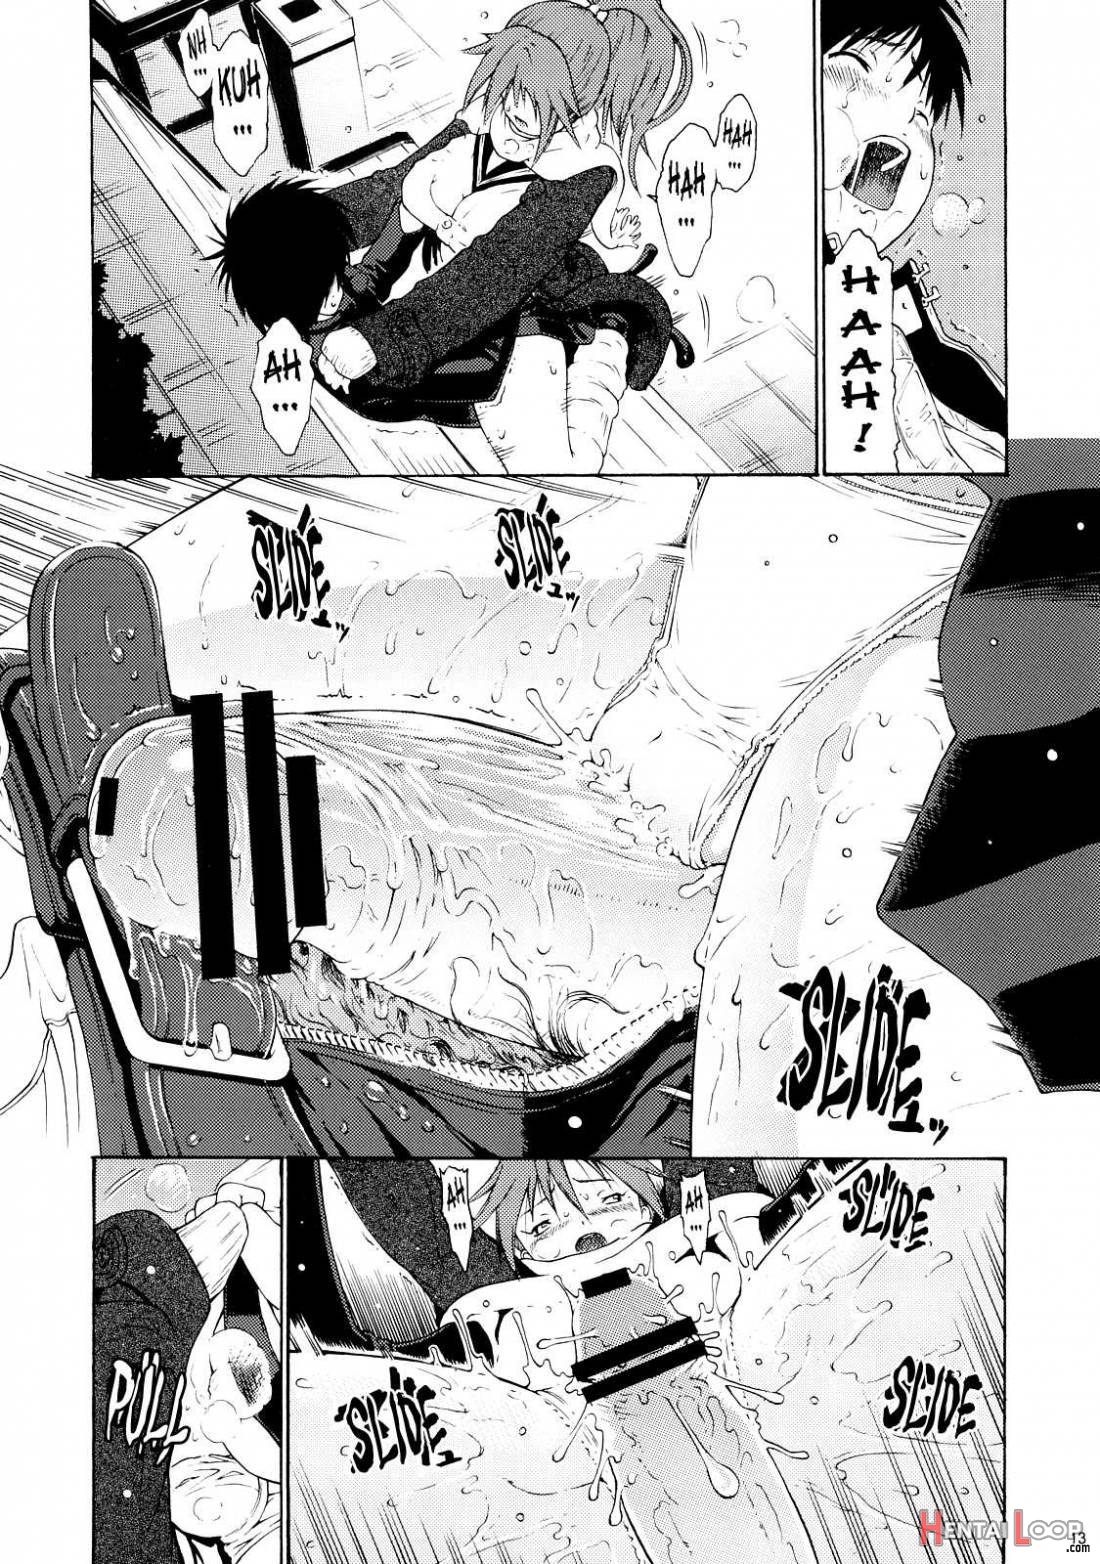 Haru Ichigo Vol.6 page 9